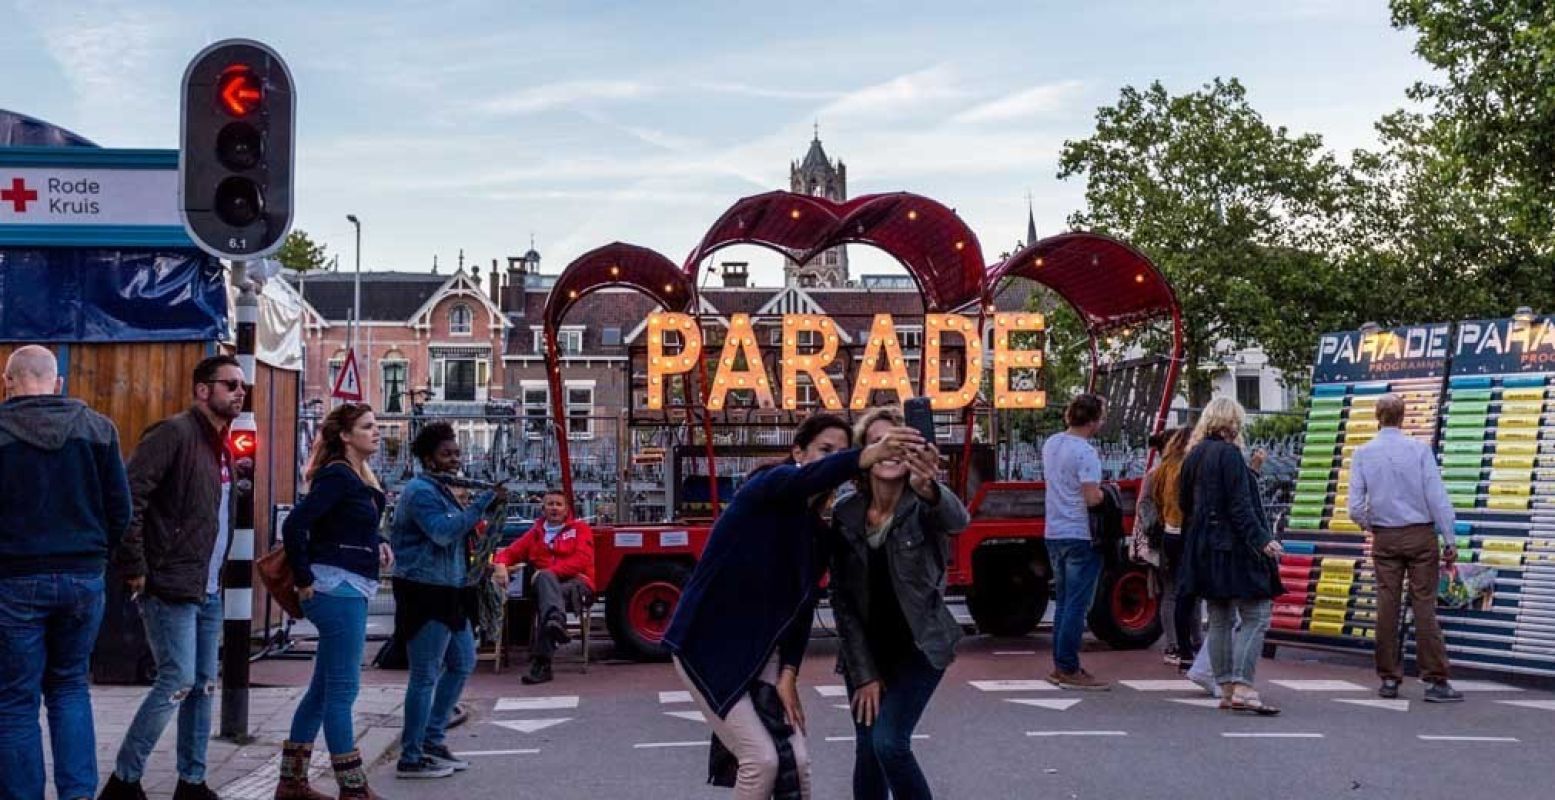 Laatste kans dit weekend: De Parade eindigt in Amsterdam. Foto: De Parade (op de foto in Utrecht) © Melanie van Leeuwen.